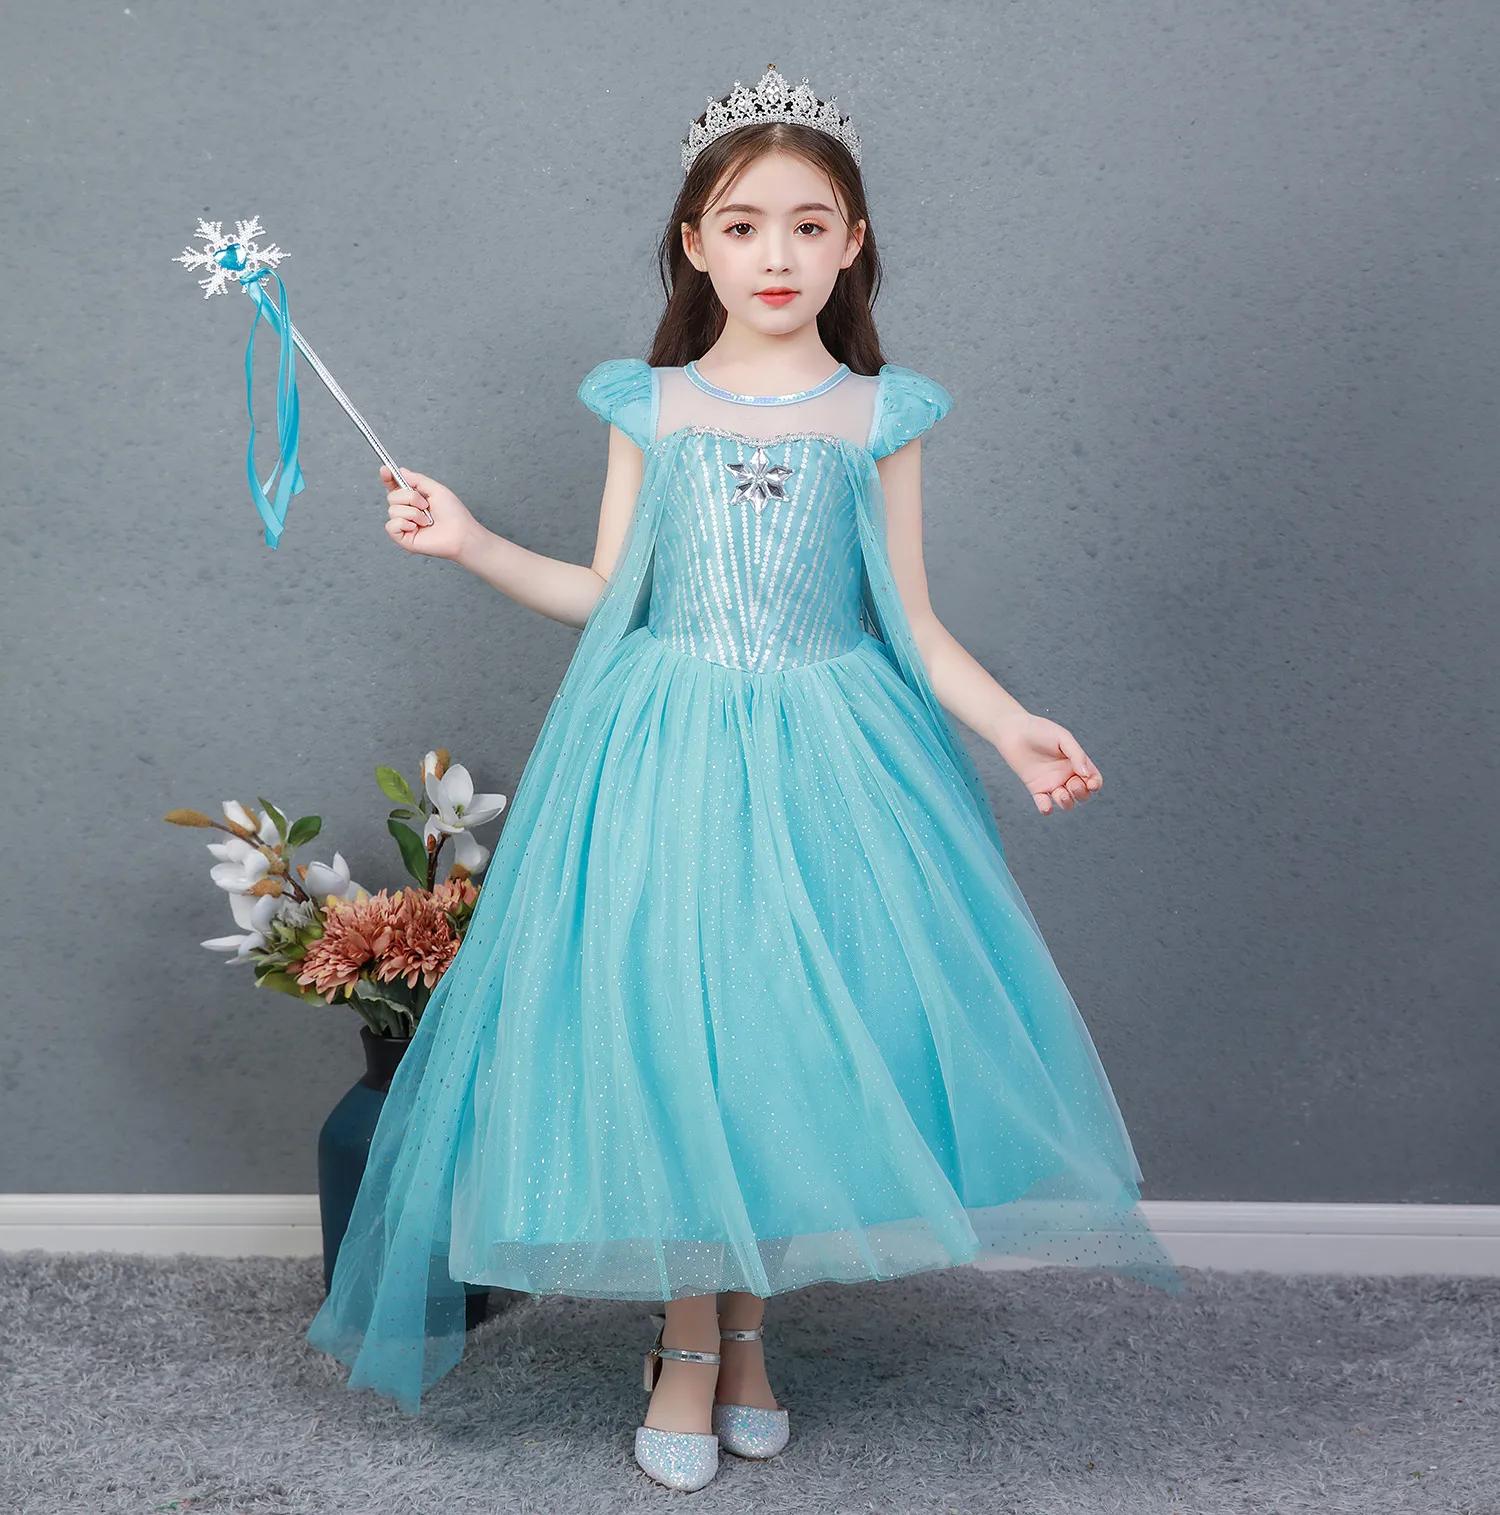 Mua Váy công chúa in hình Elsa cho bé | Tiki